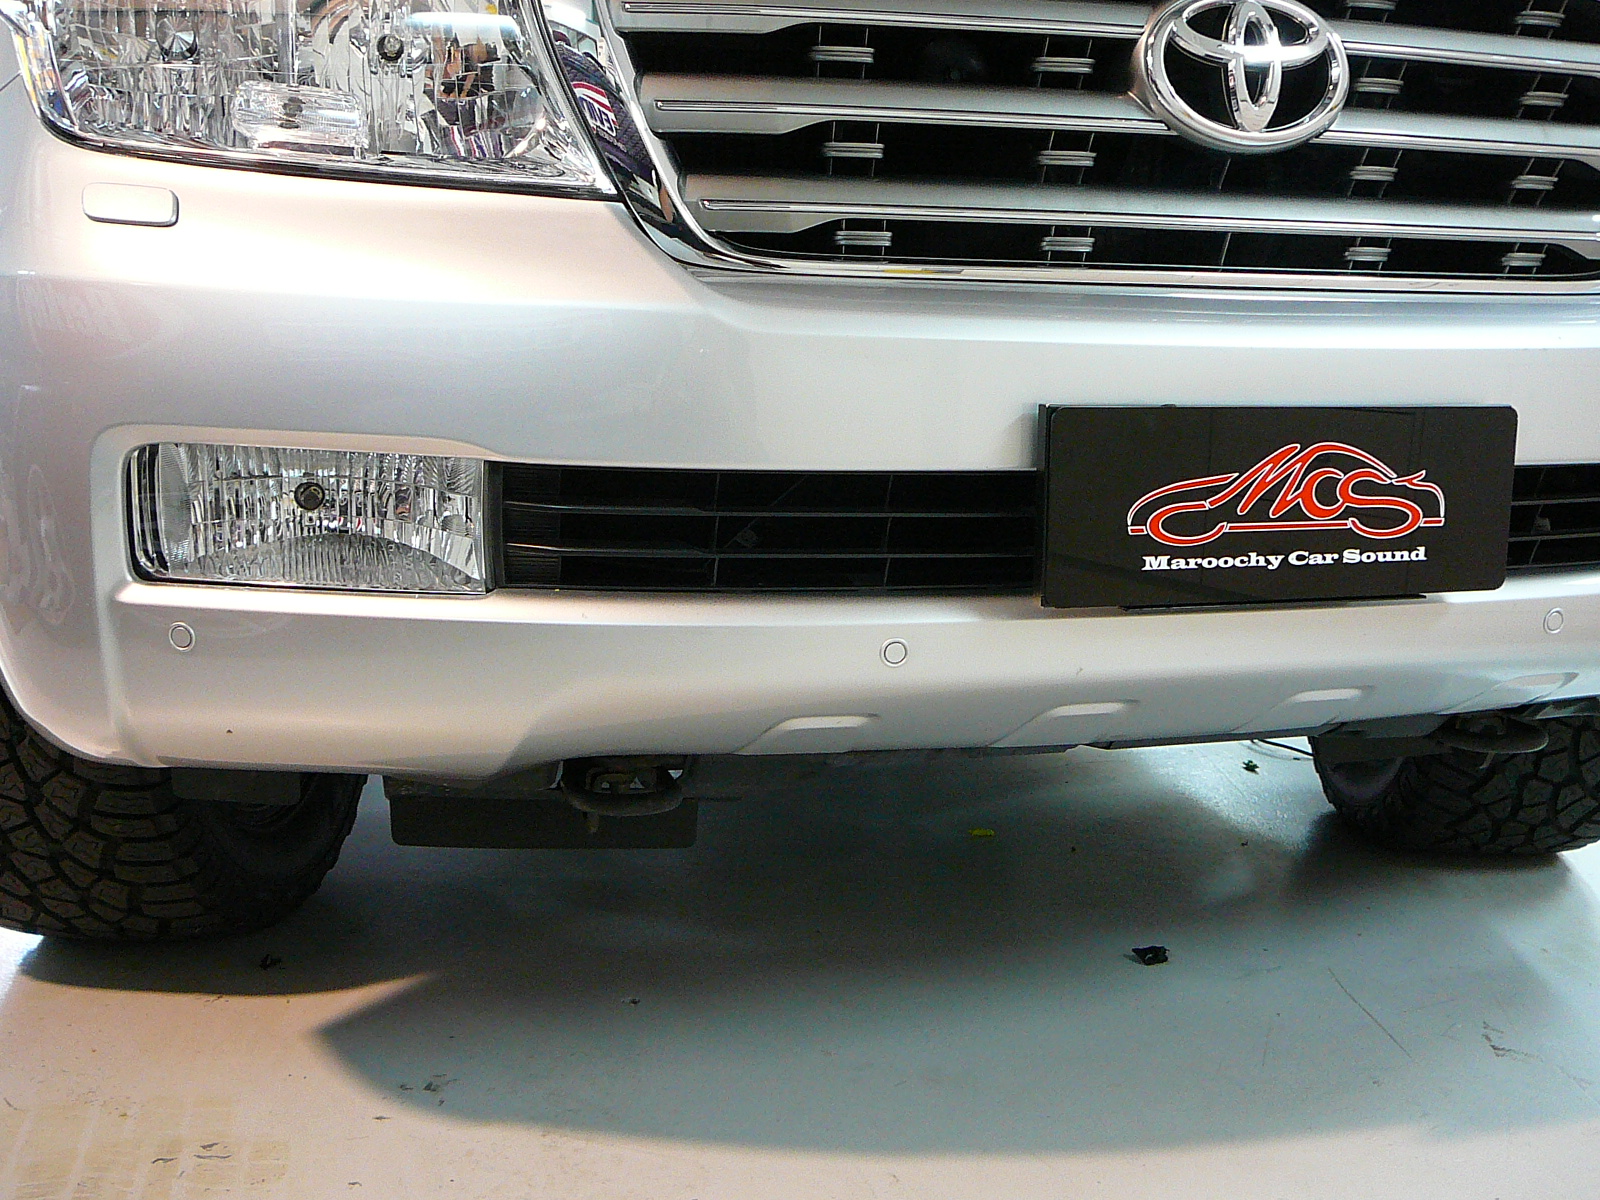 Toyota Landruiser 200 Series Sahara Front & Rear Parking Sensors